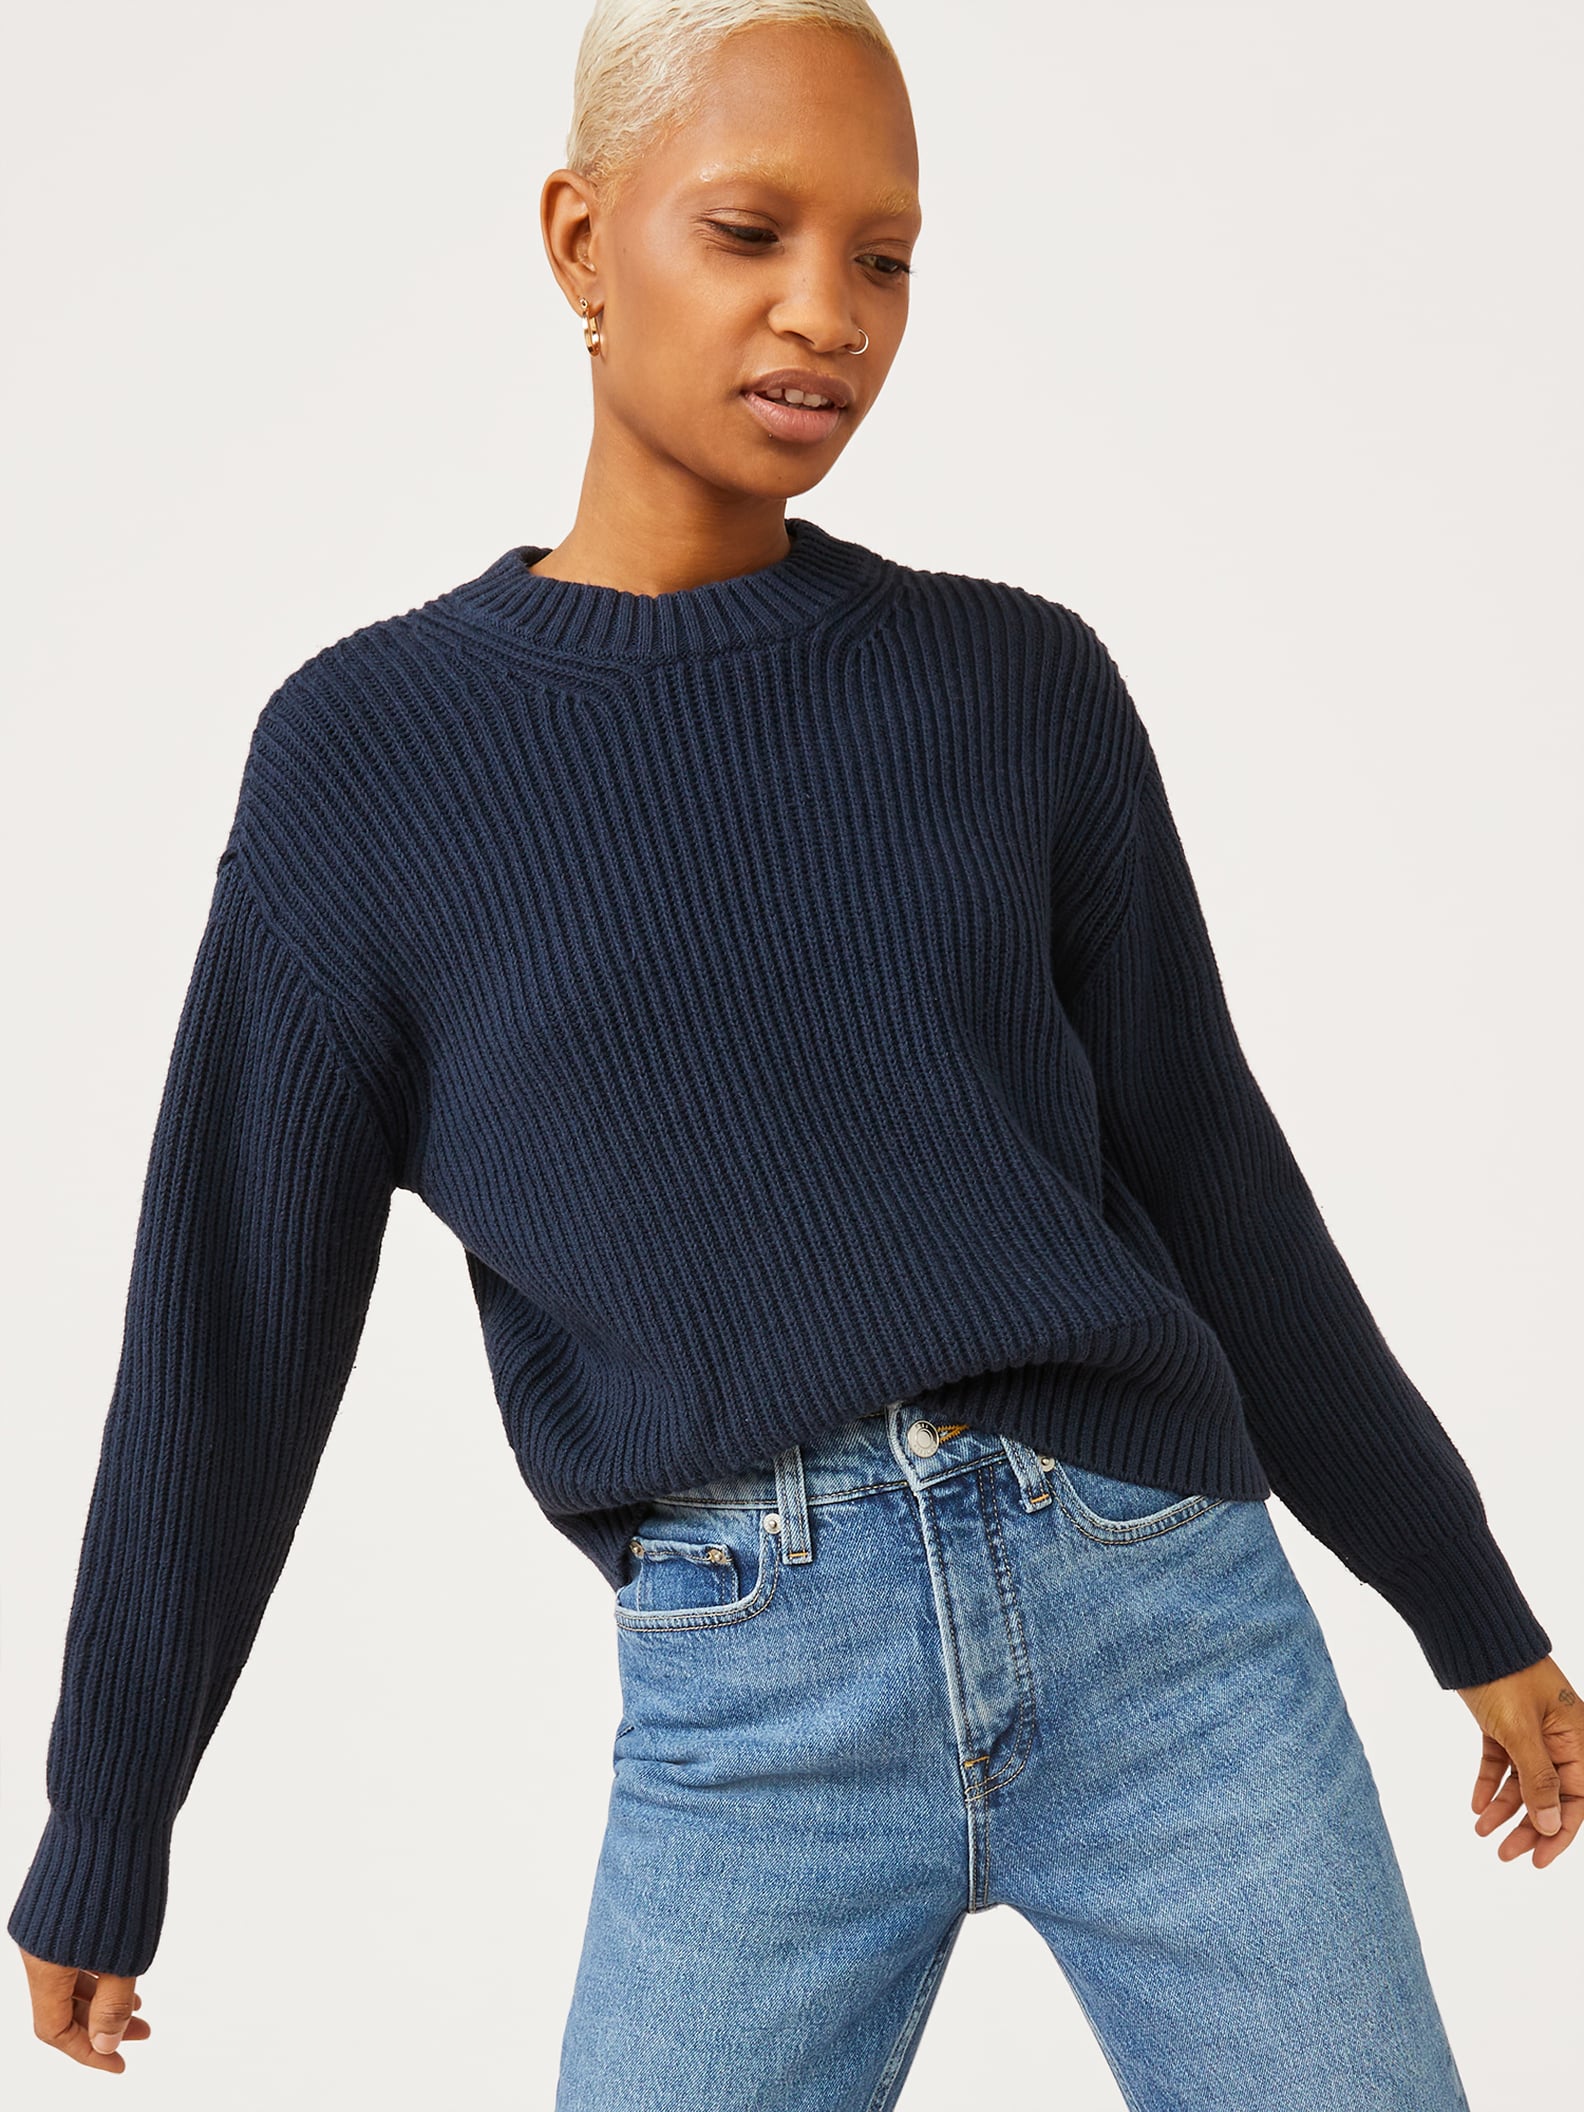 Best Women's Sweaters From Walmart | POPSUGAR Fashion